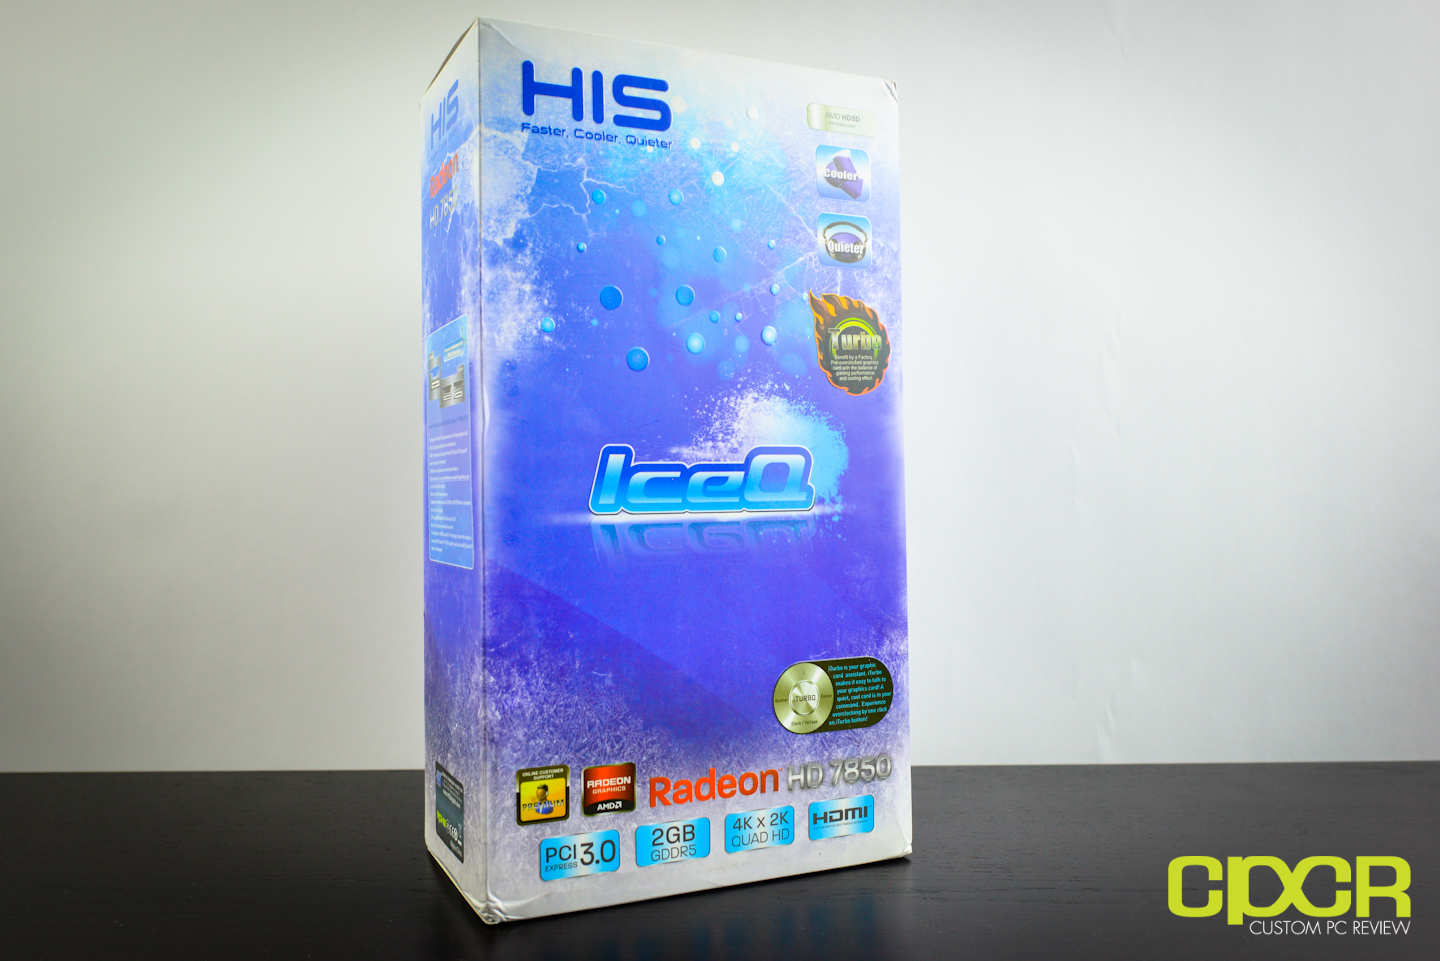 Asus Radeon Hd 7850 2Gb Review